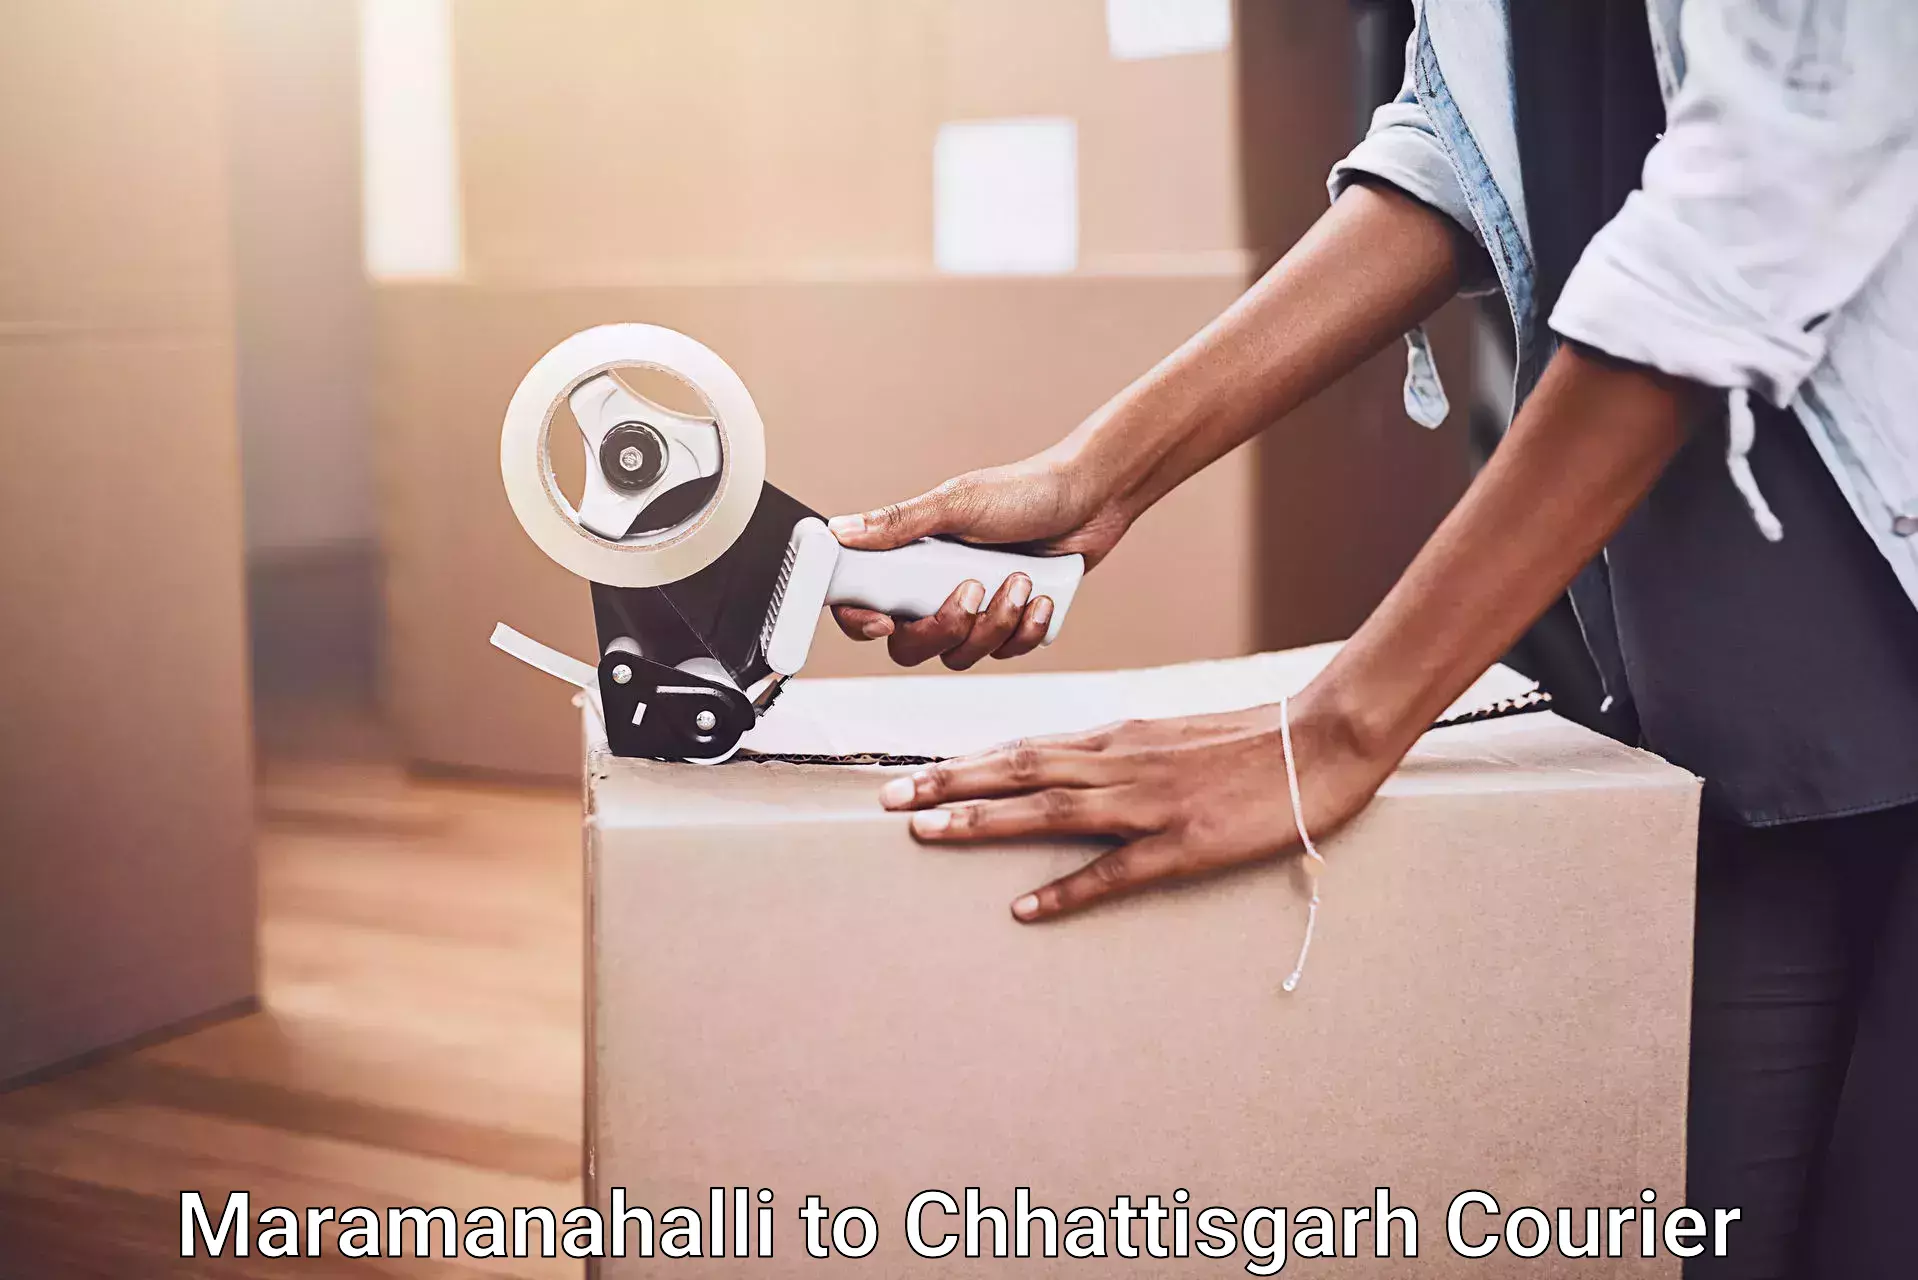 Moving and packing experts Maramanahalli to Premnagar